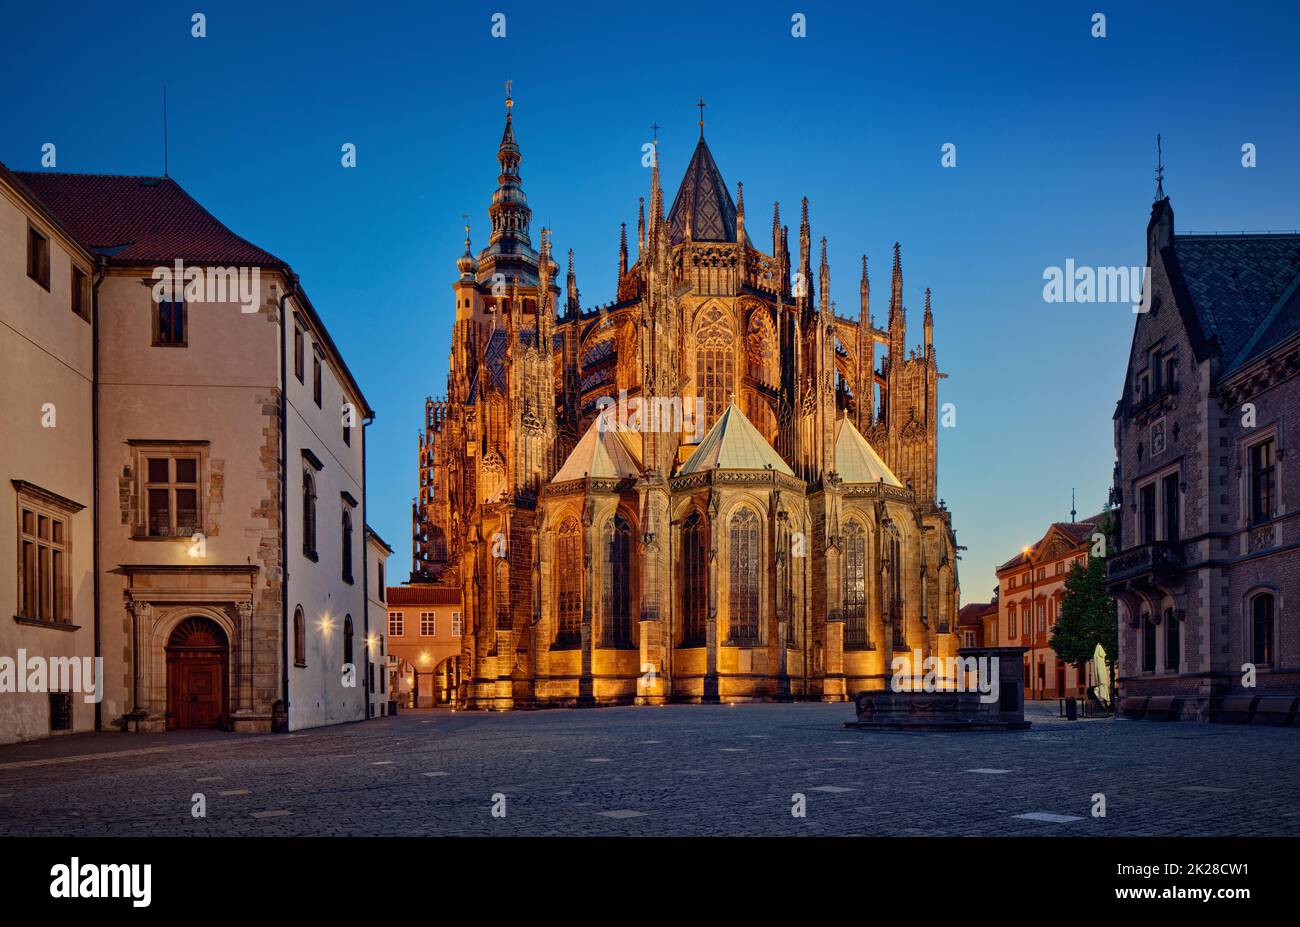 Tschechische Republik, Prag - gotische Architektur - St. Veitsdom - die östliche Fassade bei Nacht Stockfoto